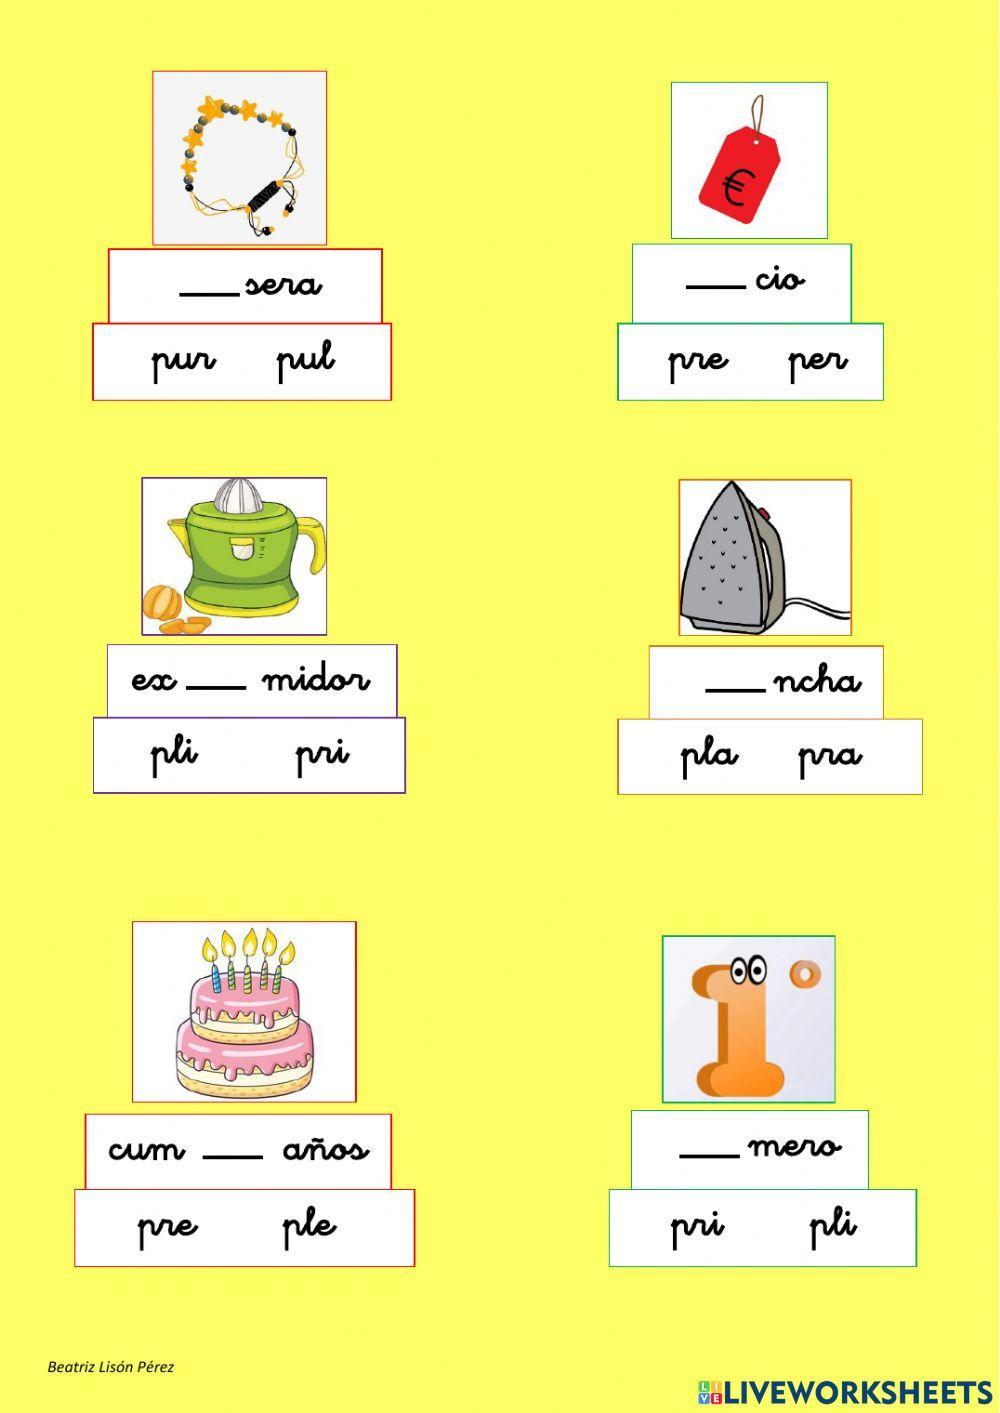 Elige la silaba correcta - palabras con pr-pl (trabadas y mixtas)